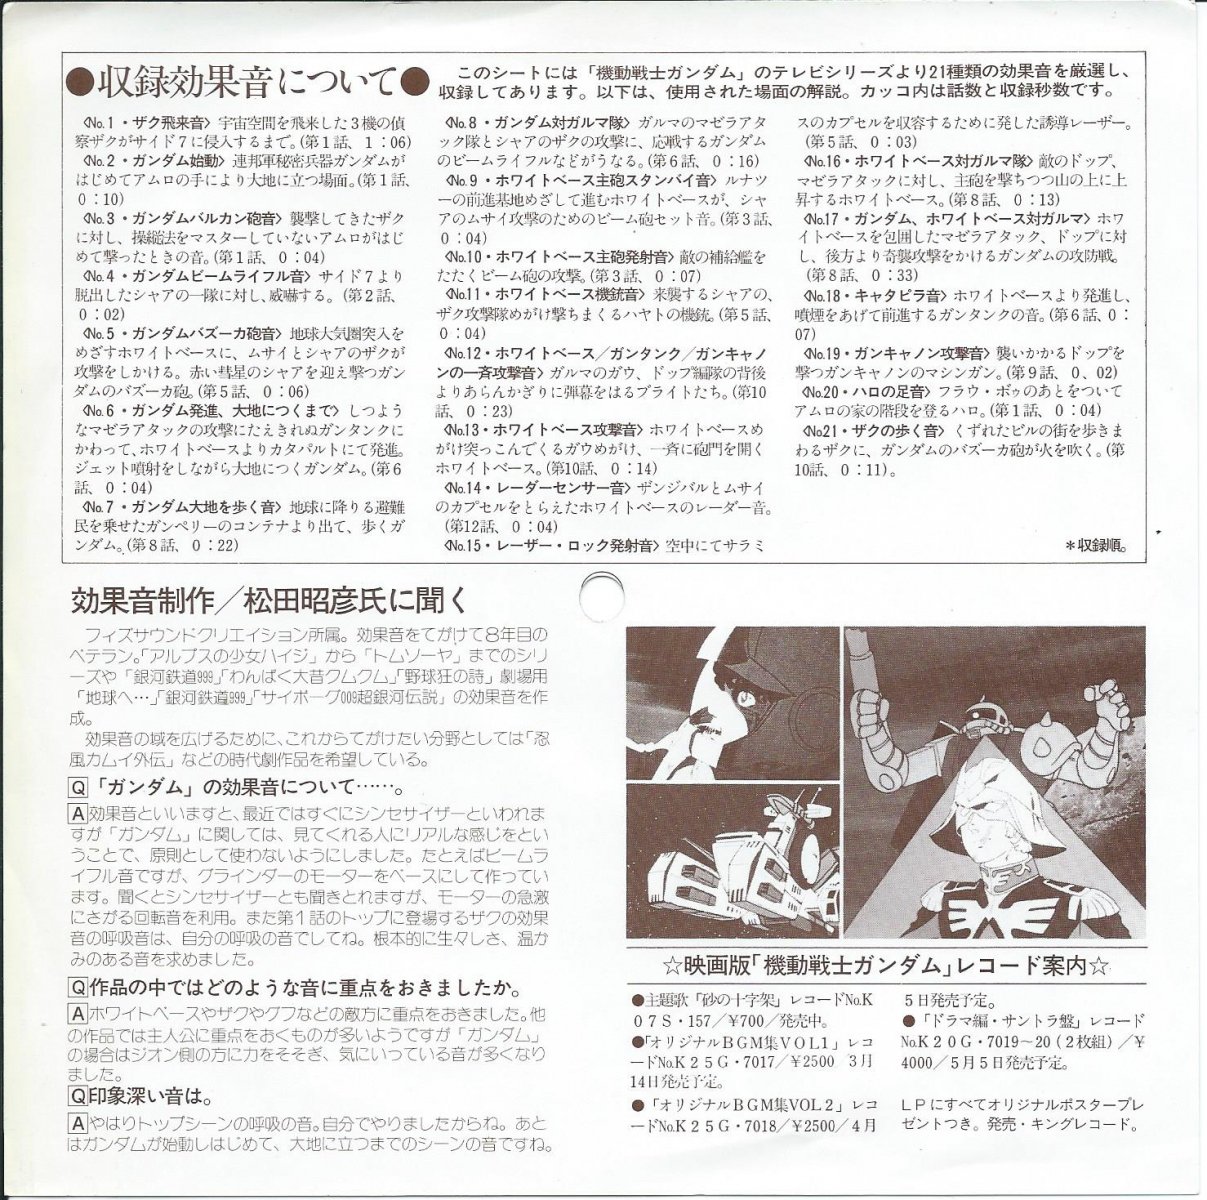 機動戦士ガンダム効果音集 Mobile Suit Gundam Special Sound Effect Disk 7 7 ソノシート Hip Tank Records